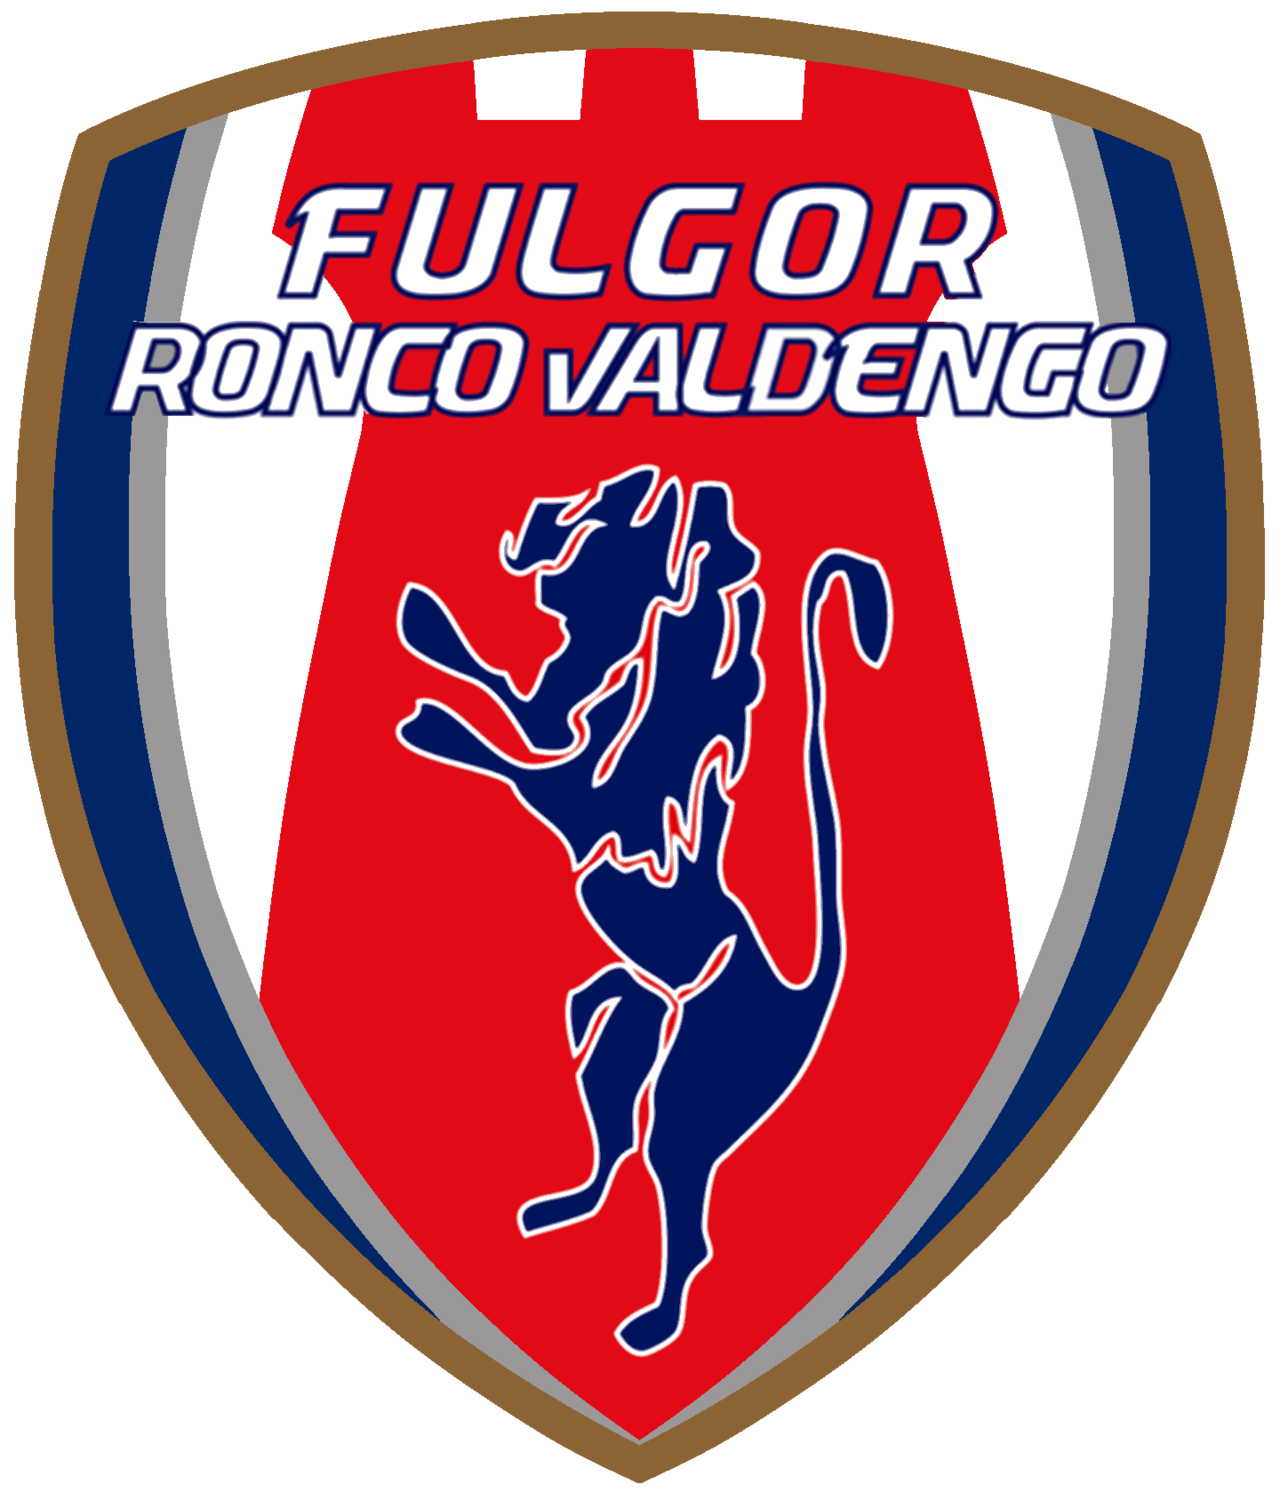 Wappen ASD Fulgor Ronco Valdengo  82751